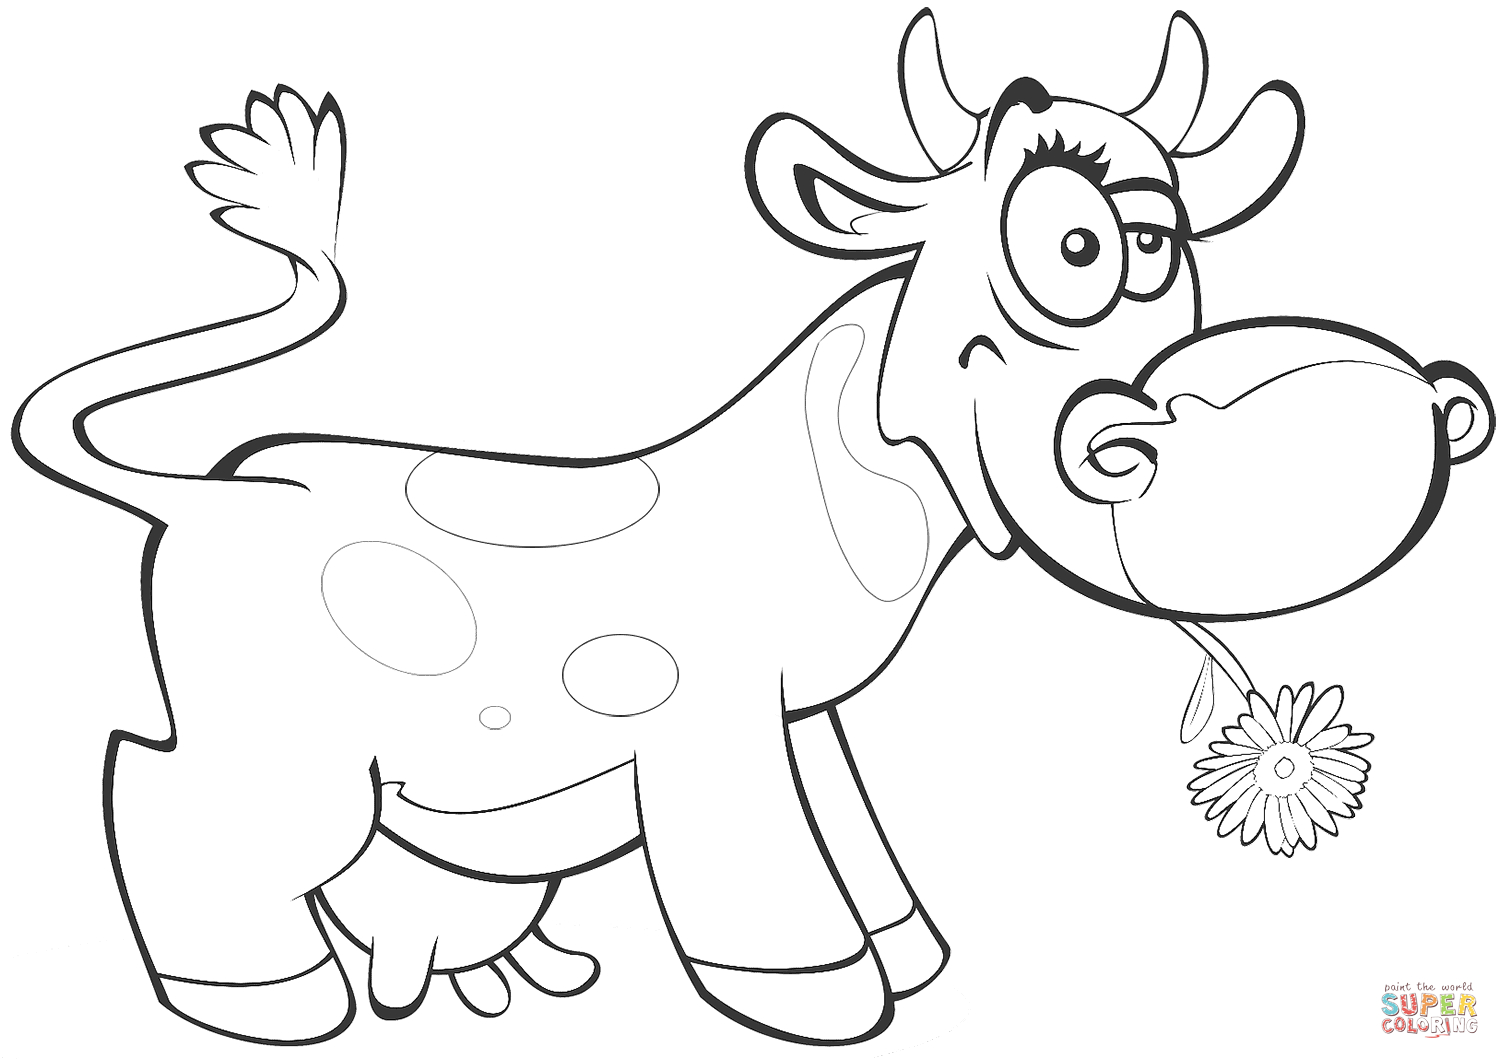 Ausmalbild: Lustige Kuh | Ausmalbilder Kostenlos Zum Ausdrucken bestimmt für Lustige Ausmalbilder